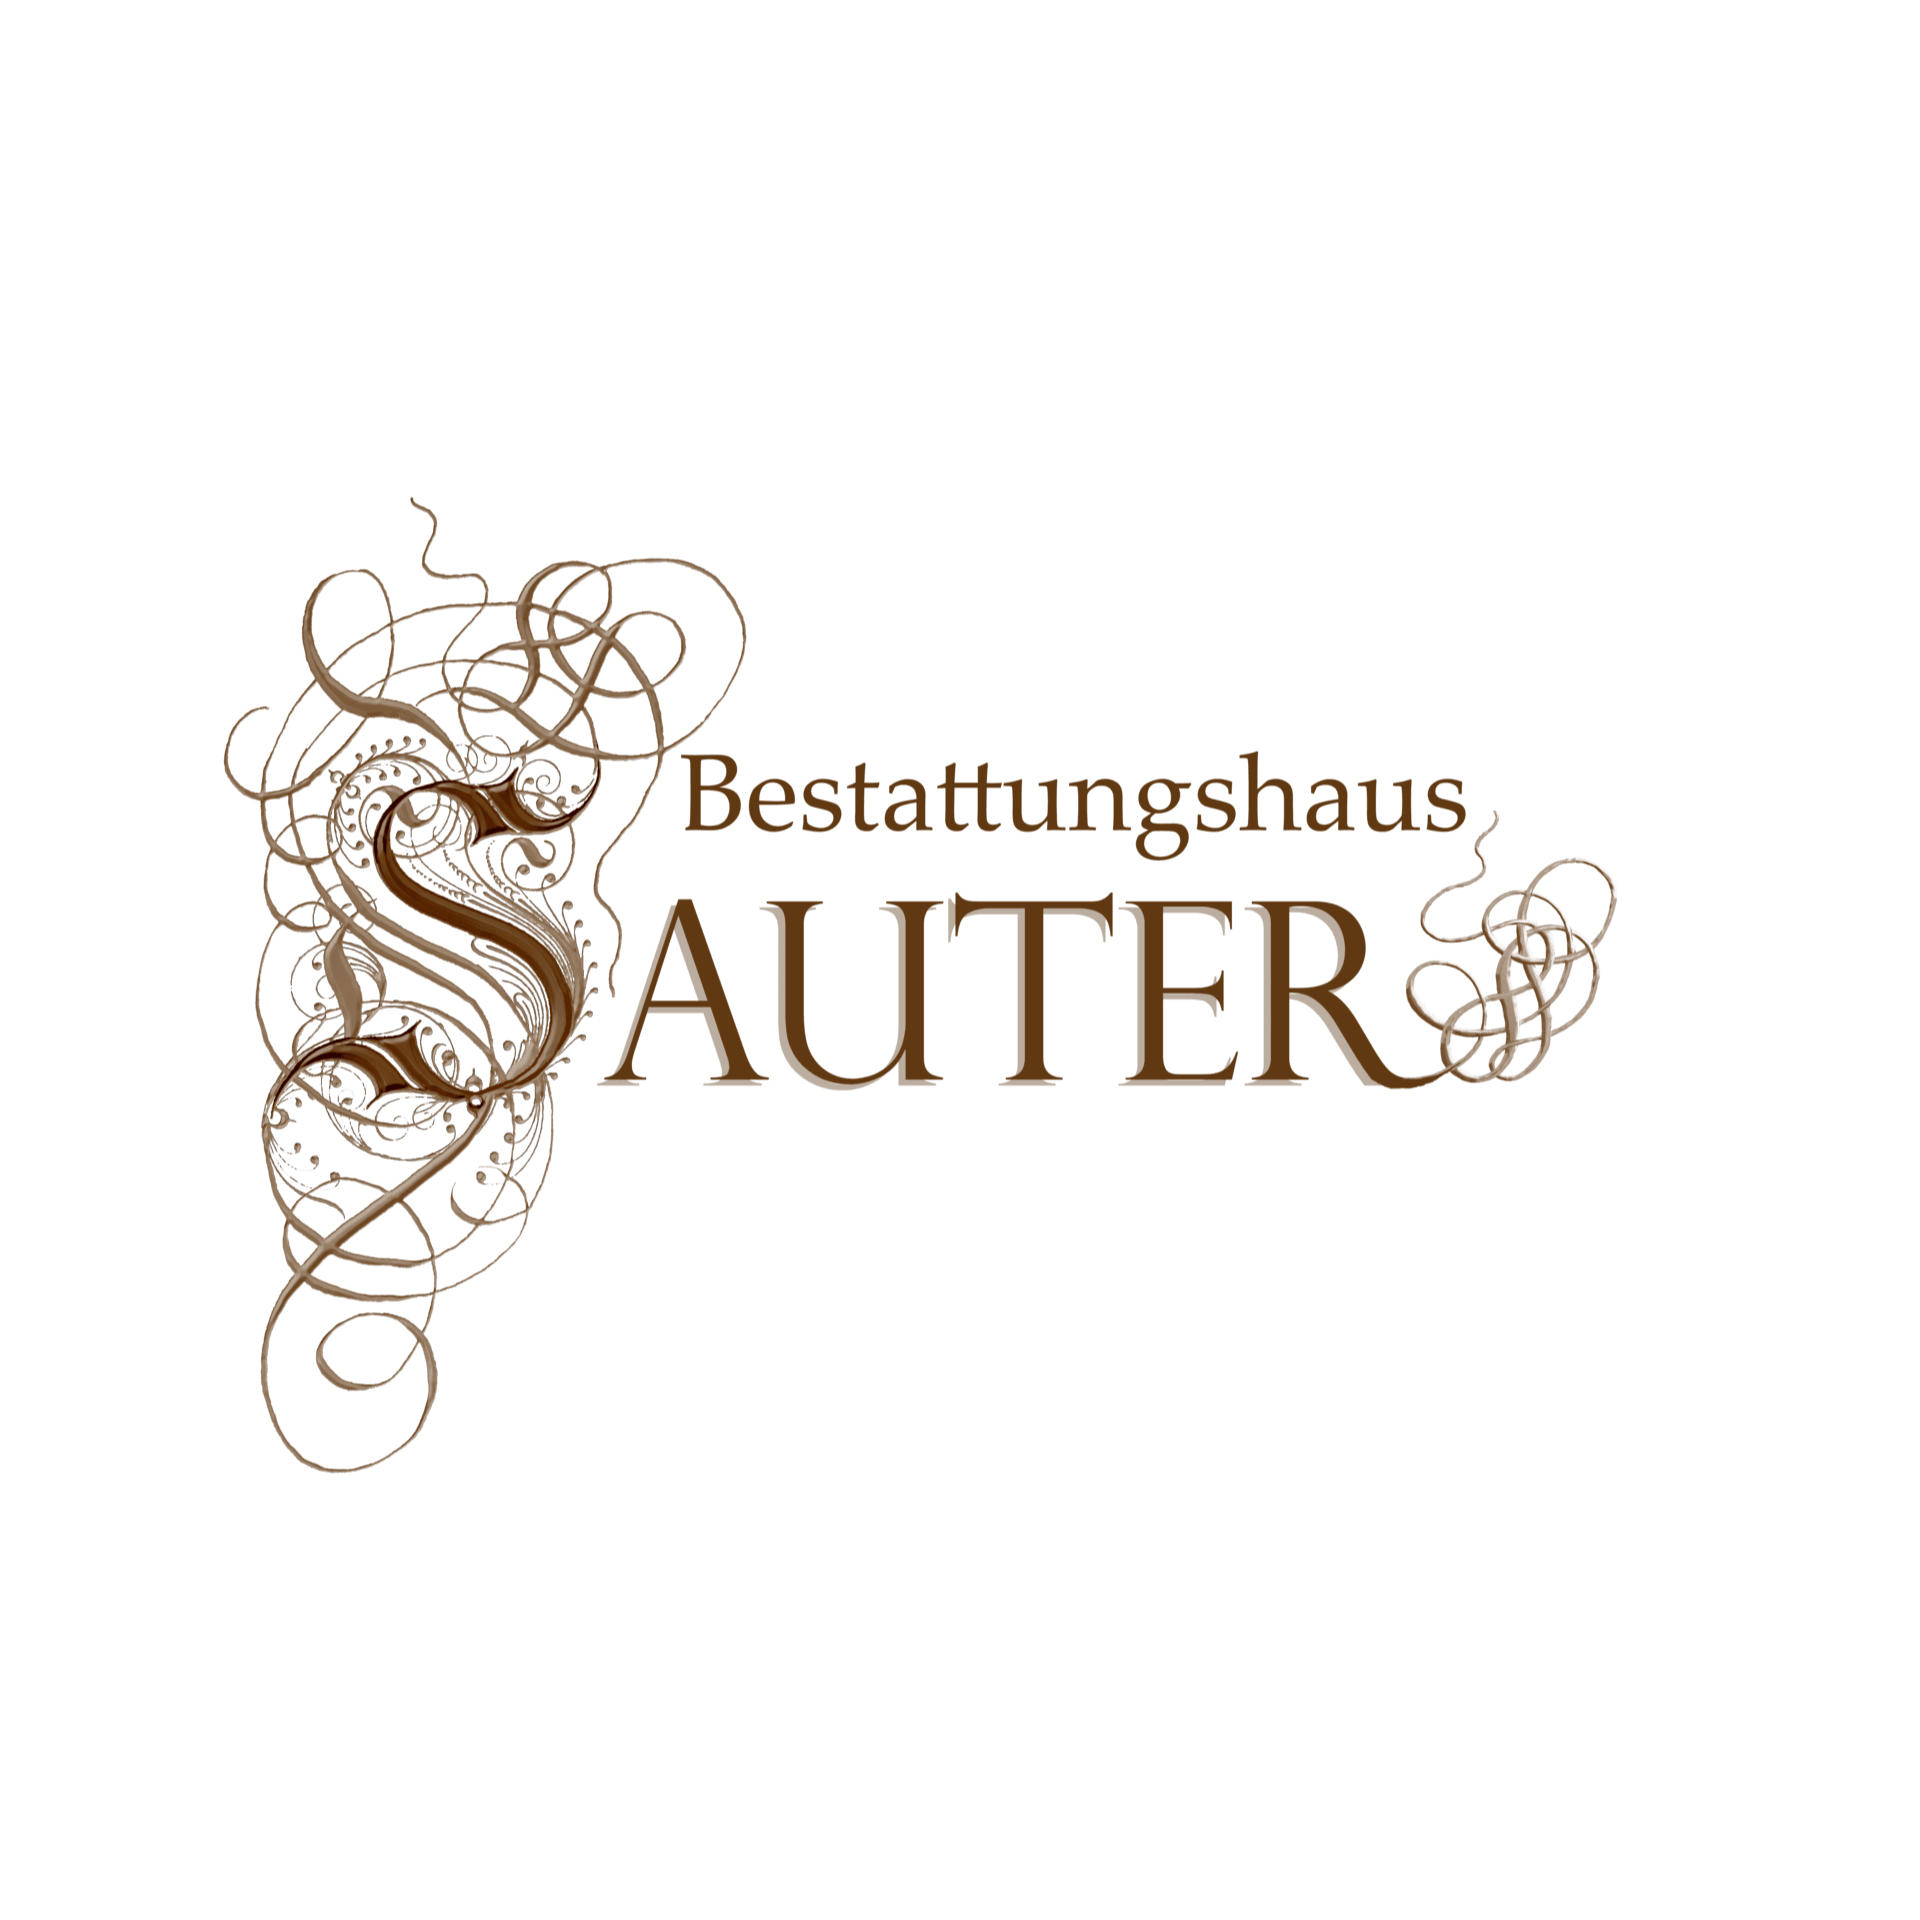 Bestattungshaus Sauter in Buchen im Odenwald - Logo